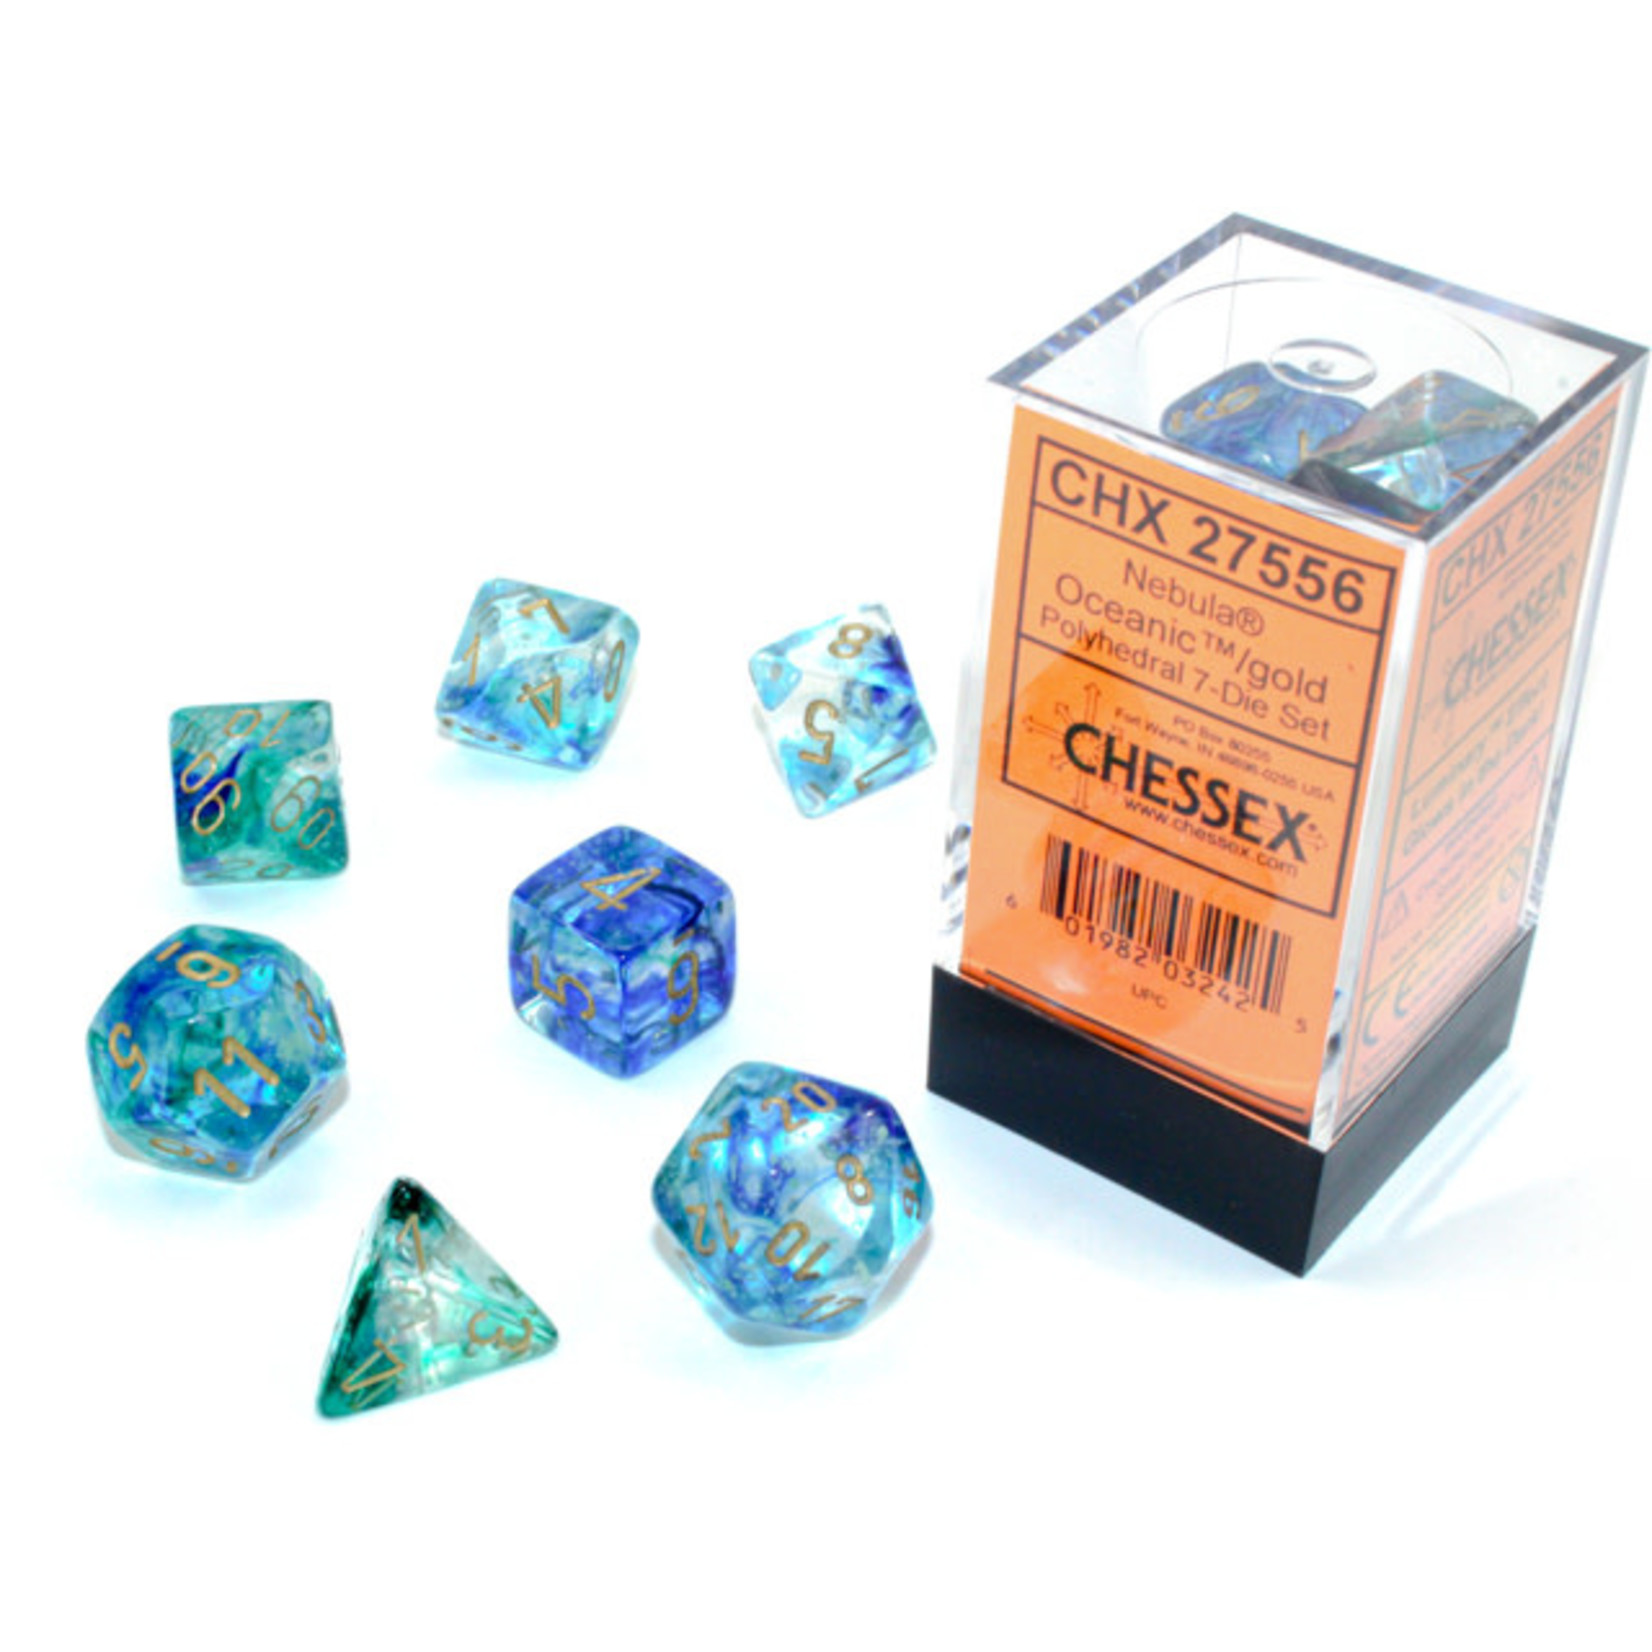 Chessex Dice RPG 27556 7pc Nebula Oceanic/Gold Luminary